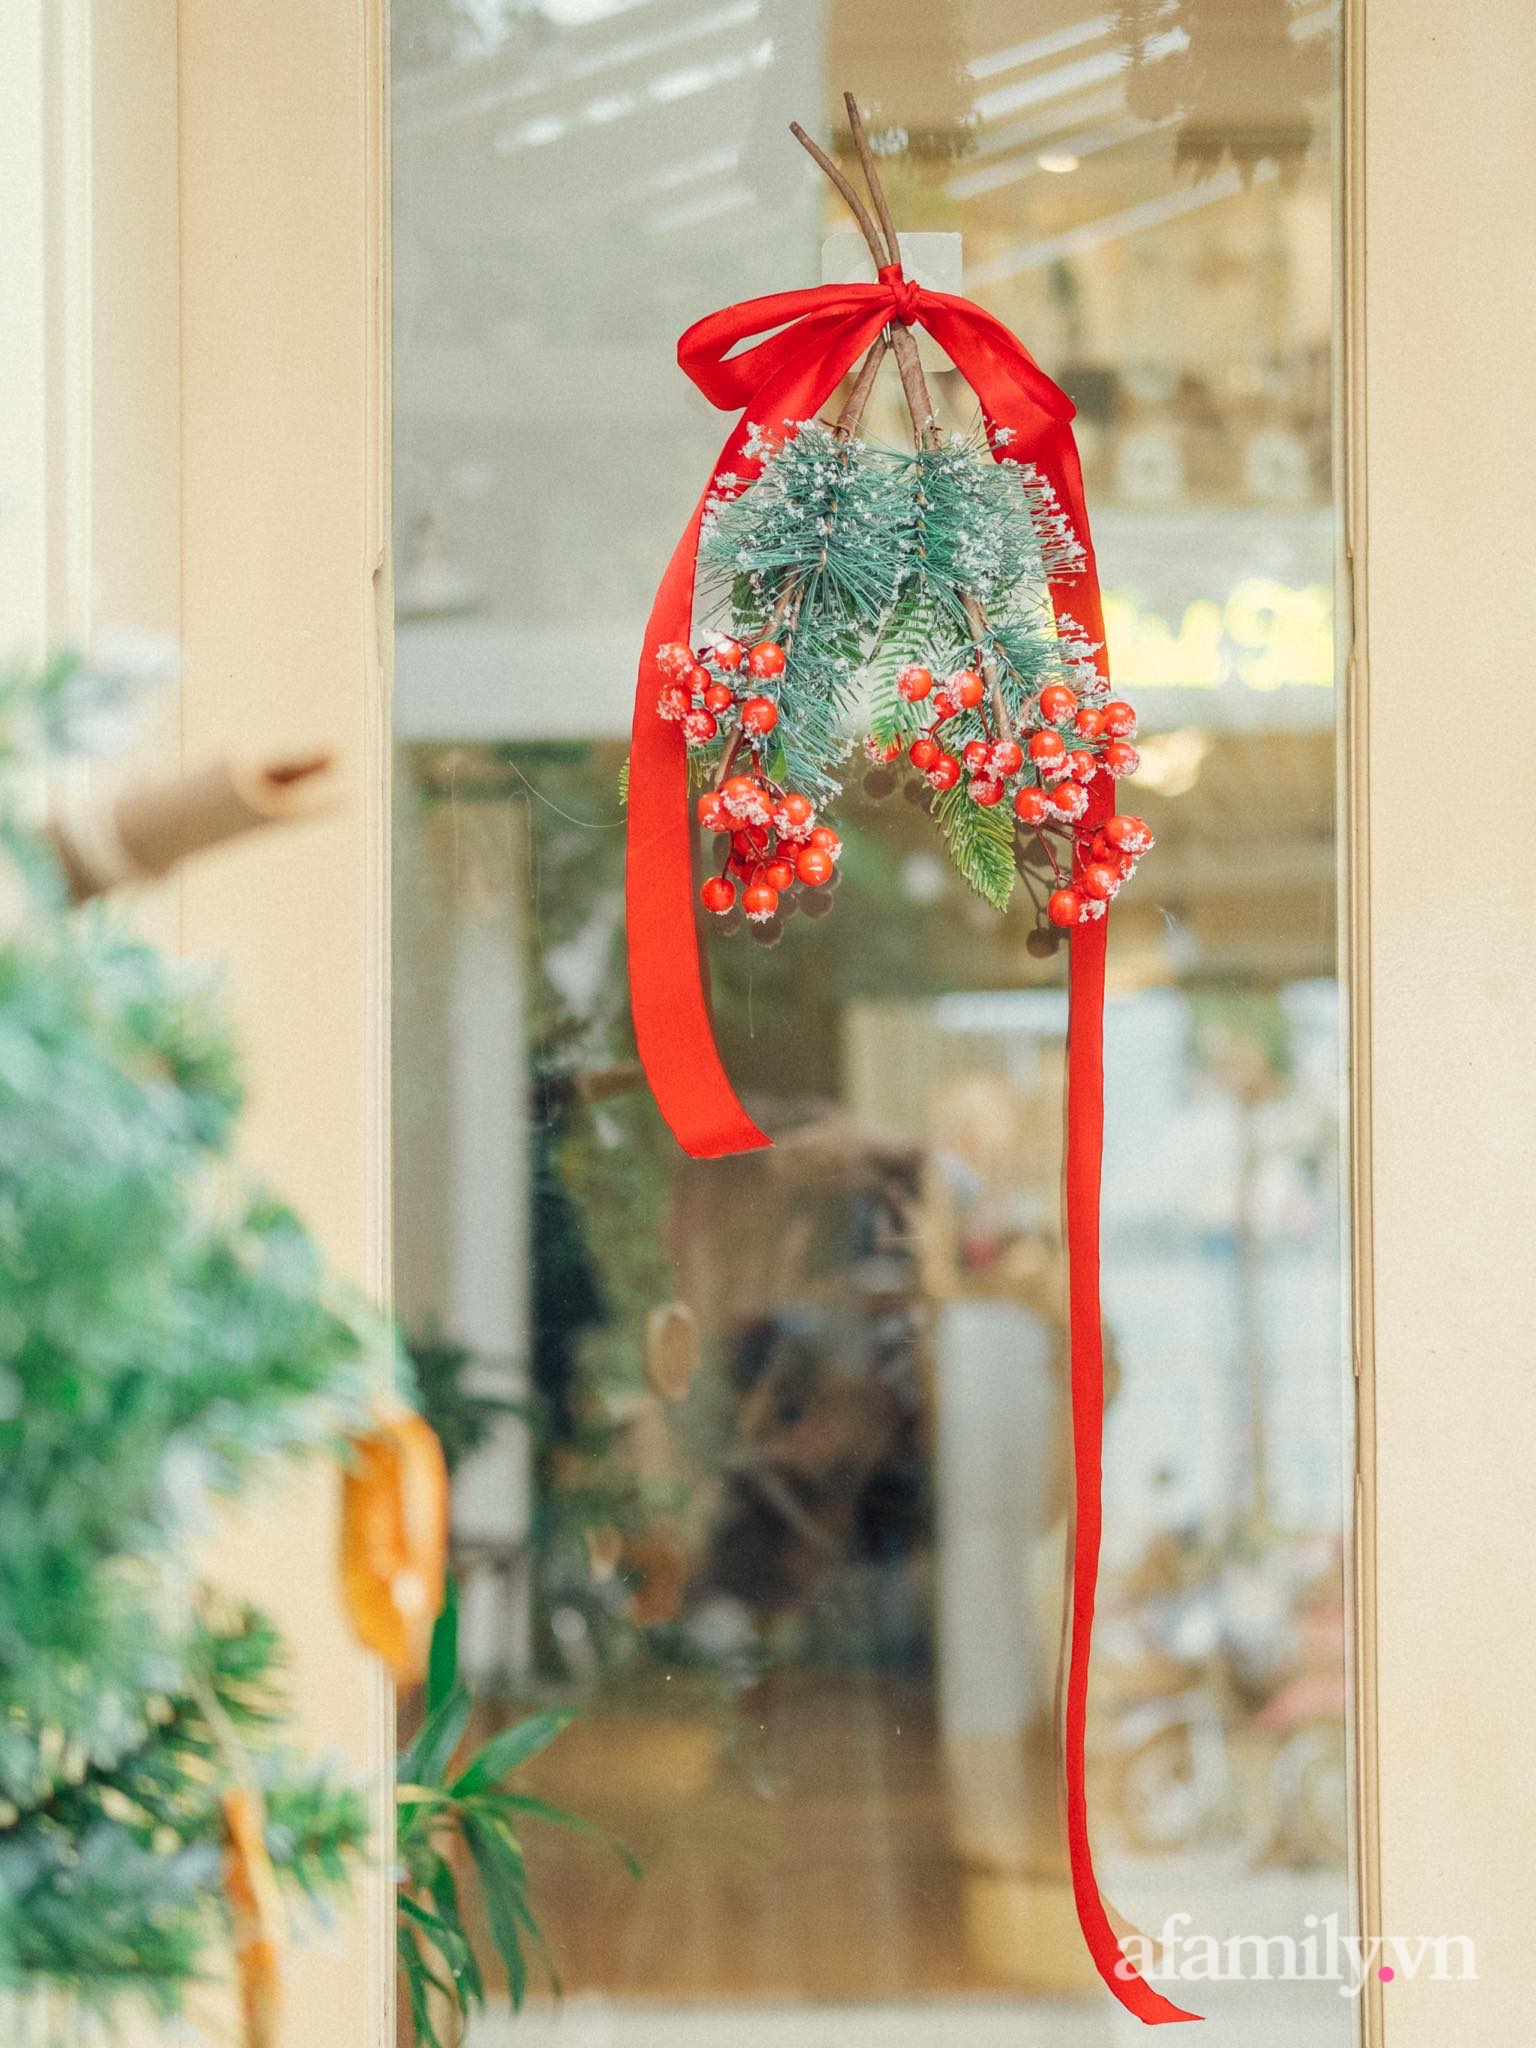 Căn nhà phố Hà Nội dịu dàng hương Giáng sinh nhờ decor bằng nguyên liệu sẵn có trong bếp - Ảnh 25.